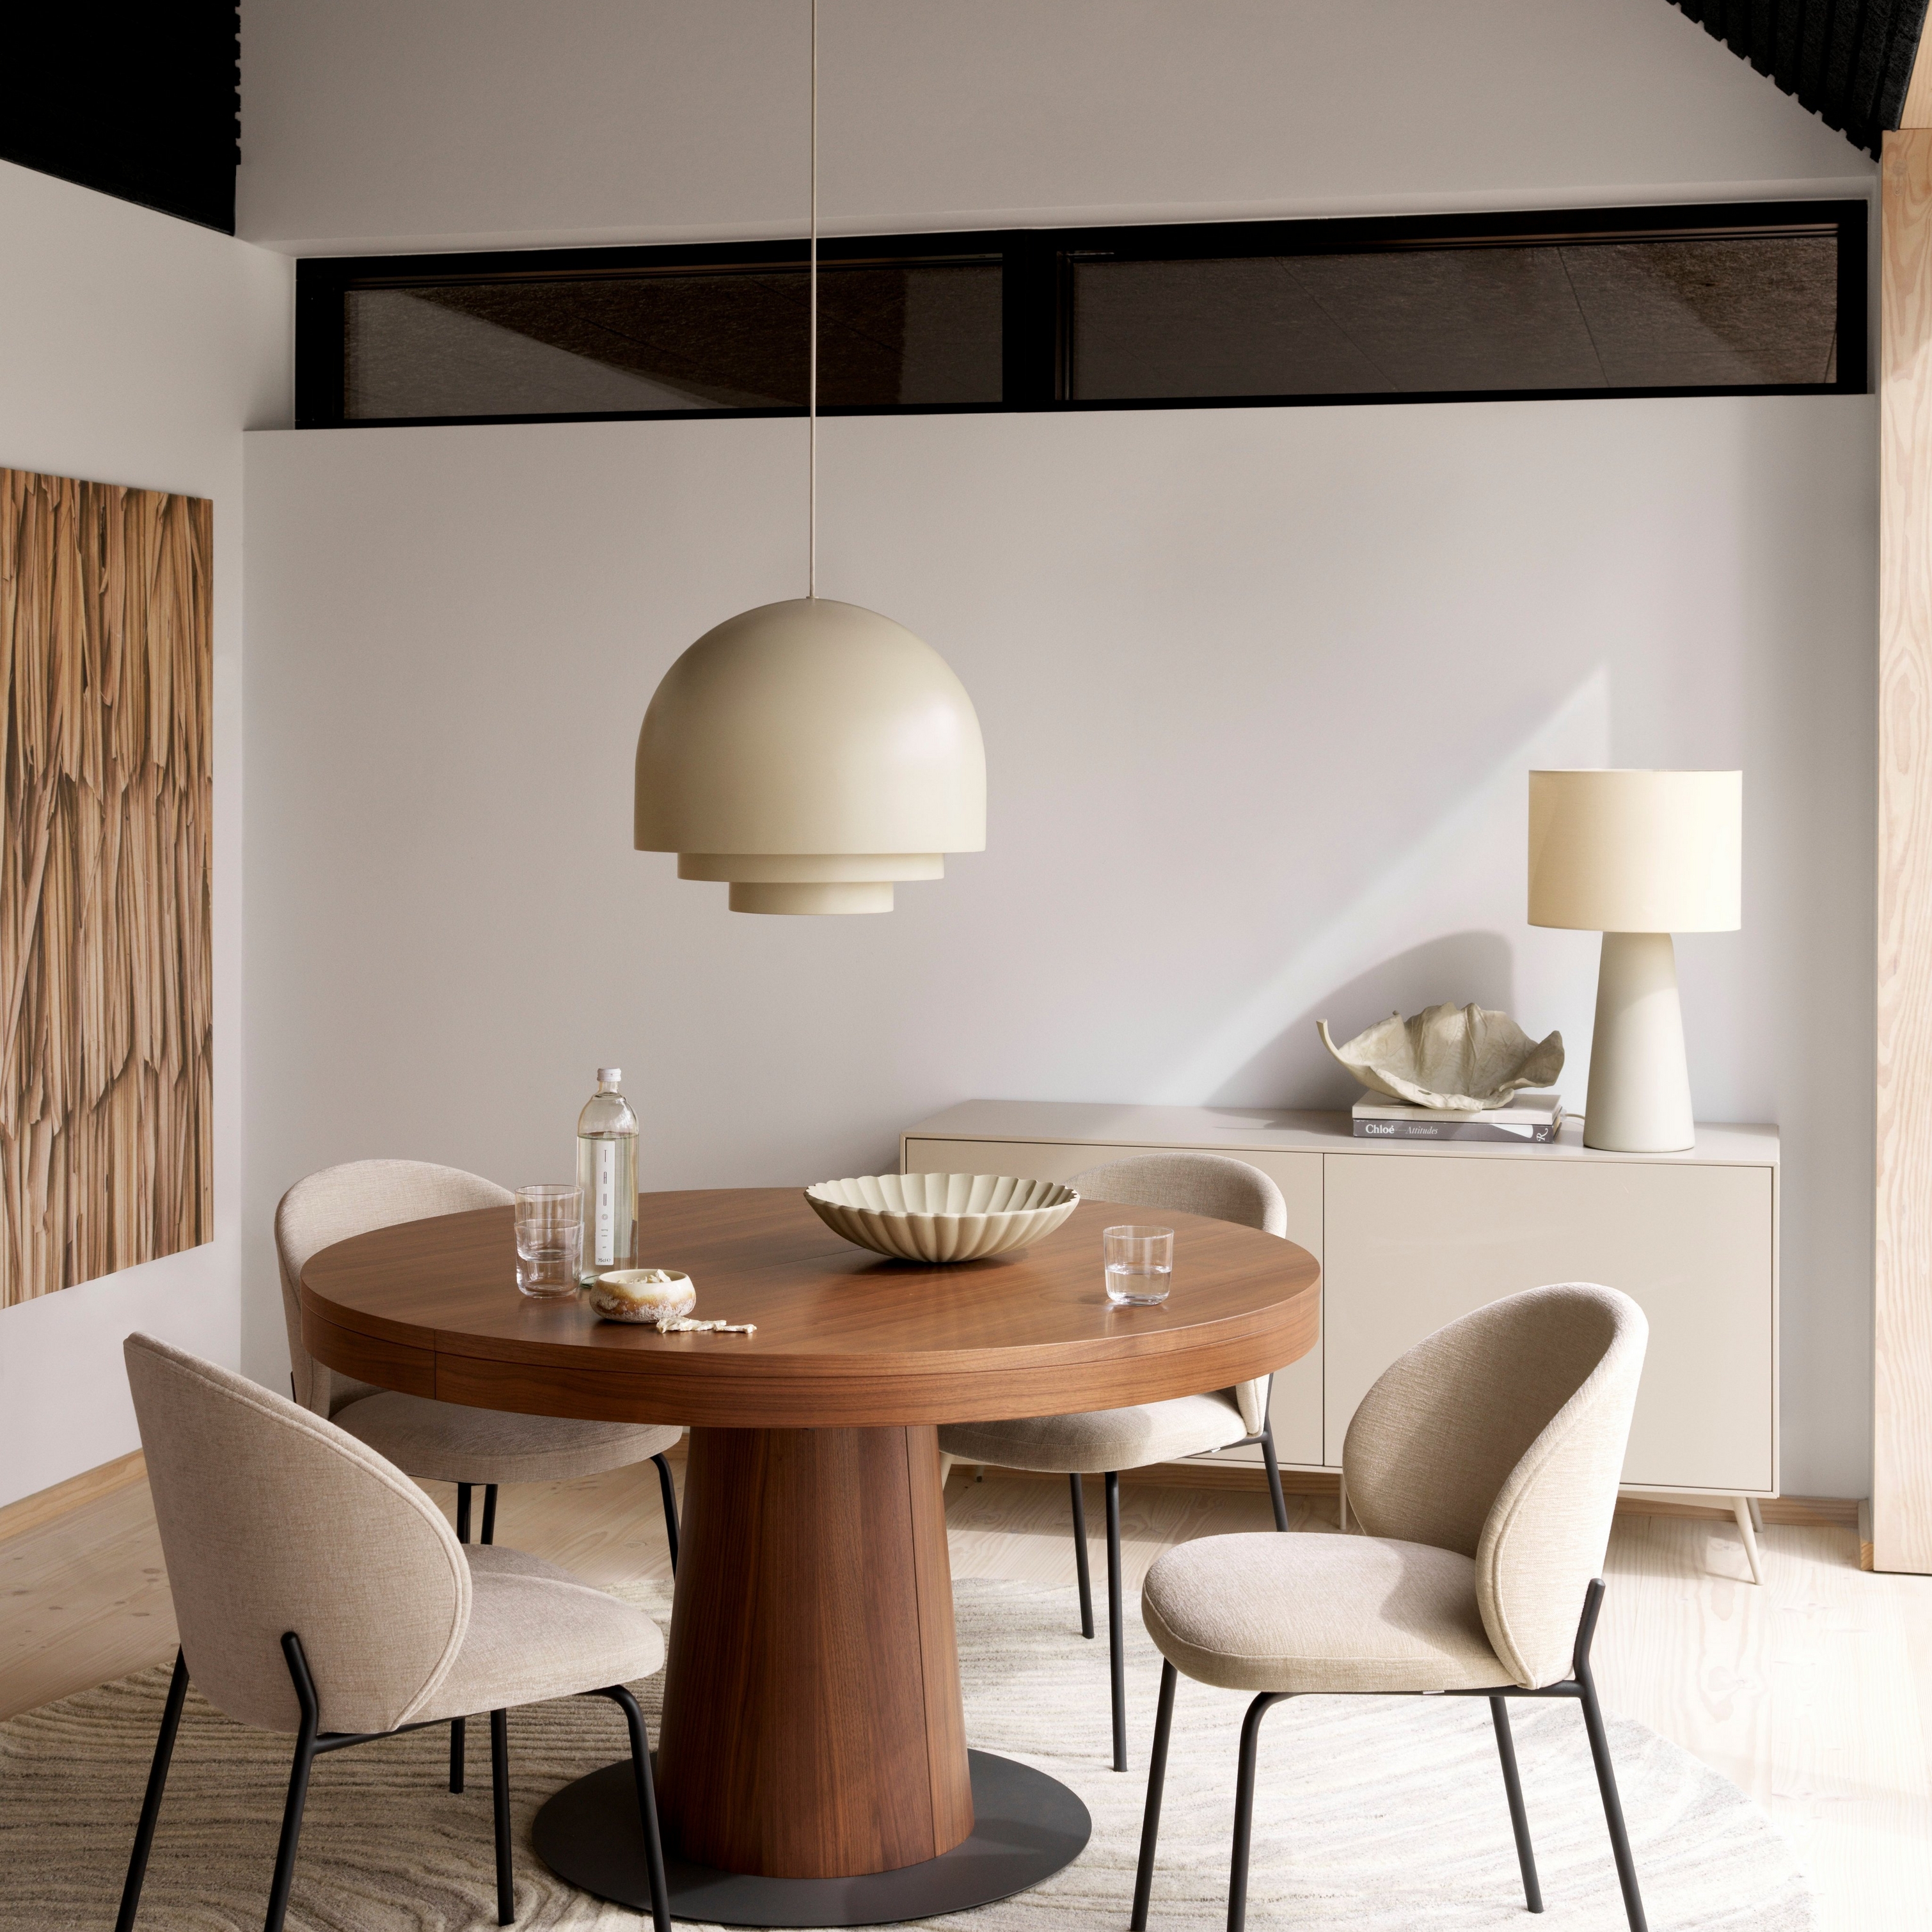 Moderne spisestue med rundt Granada bord i tre, beige Princeton stoler, taklampe og kremfarget teppe.